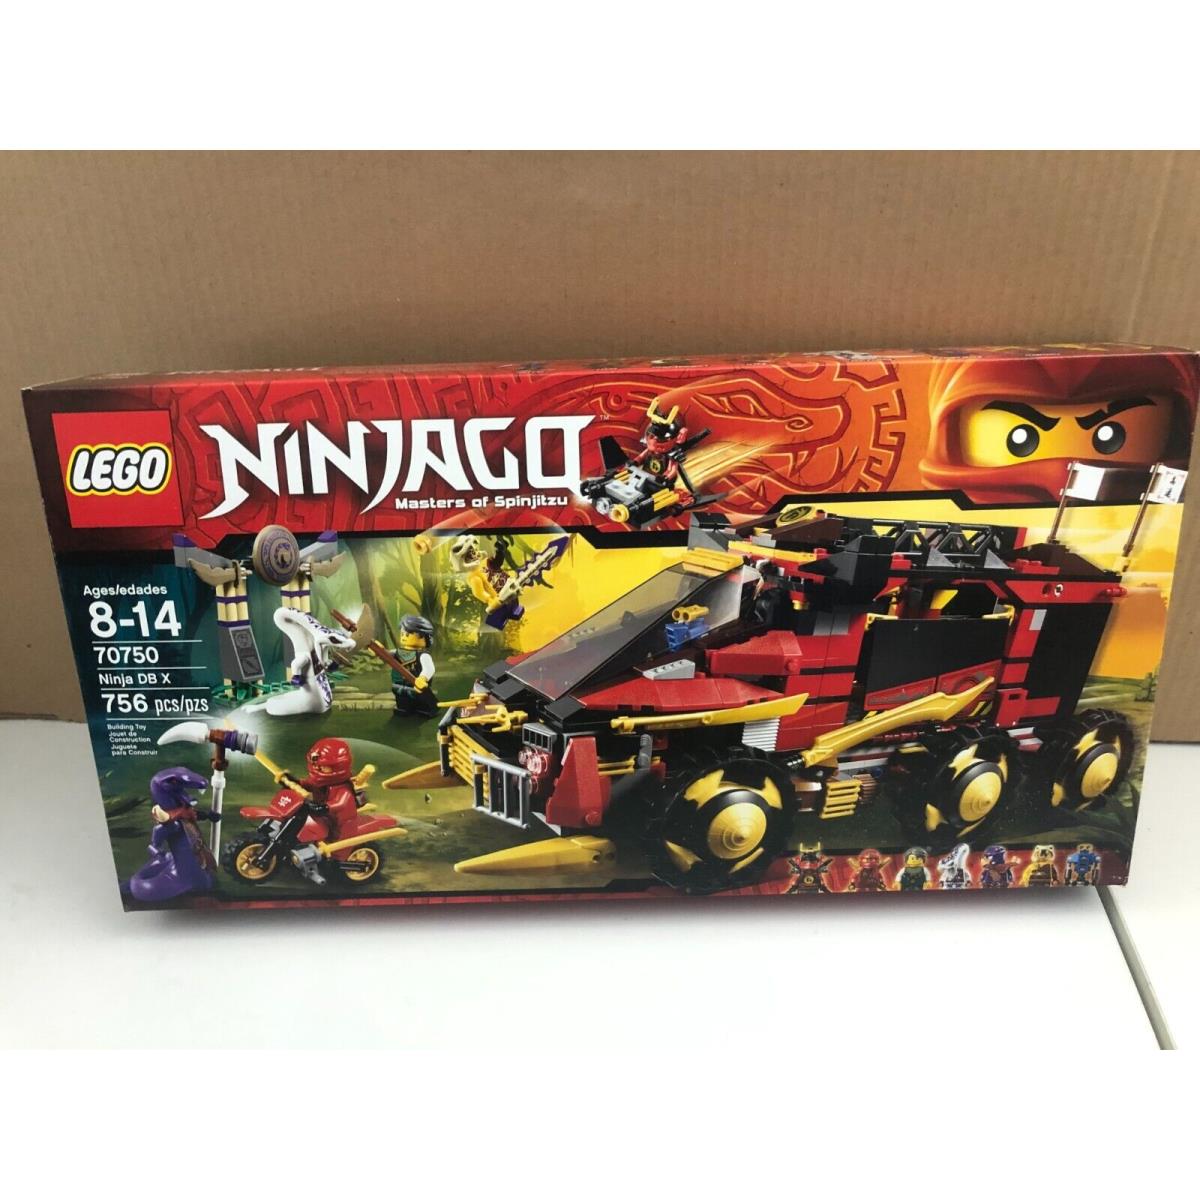 Lego Ninjago 70750 Ninja DB X Attack Vehicle